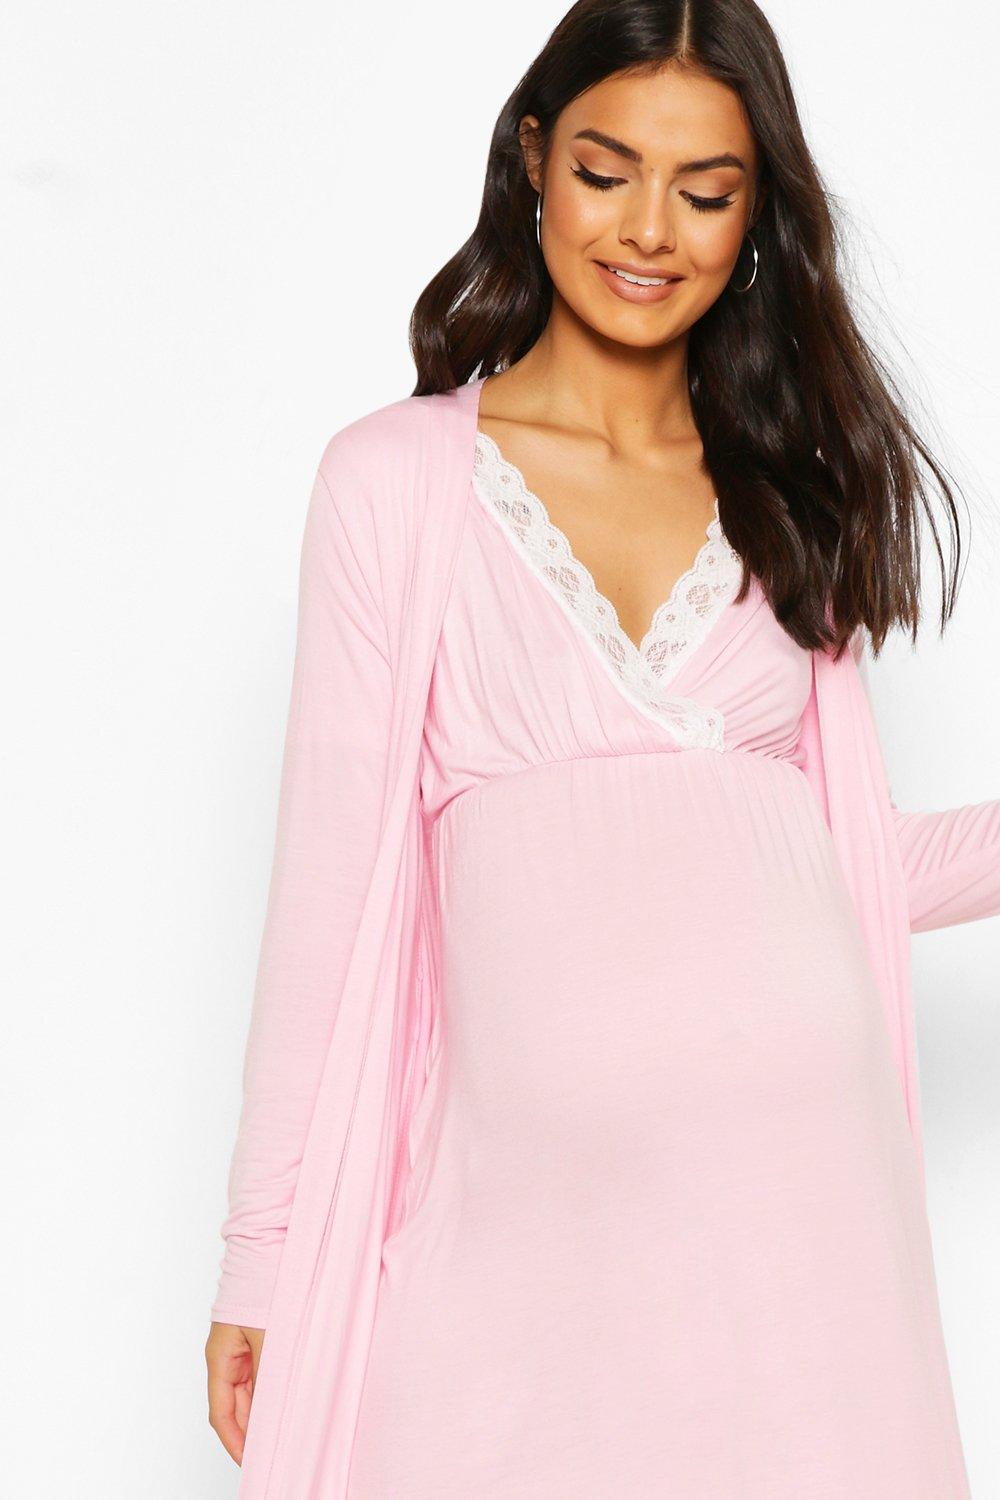 Pink Maternity & Nursing Nightwear Set